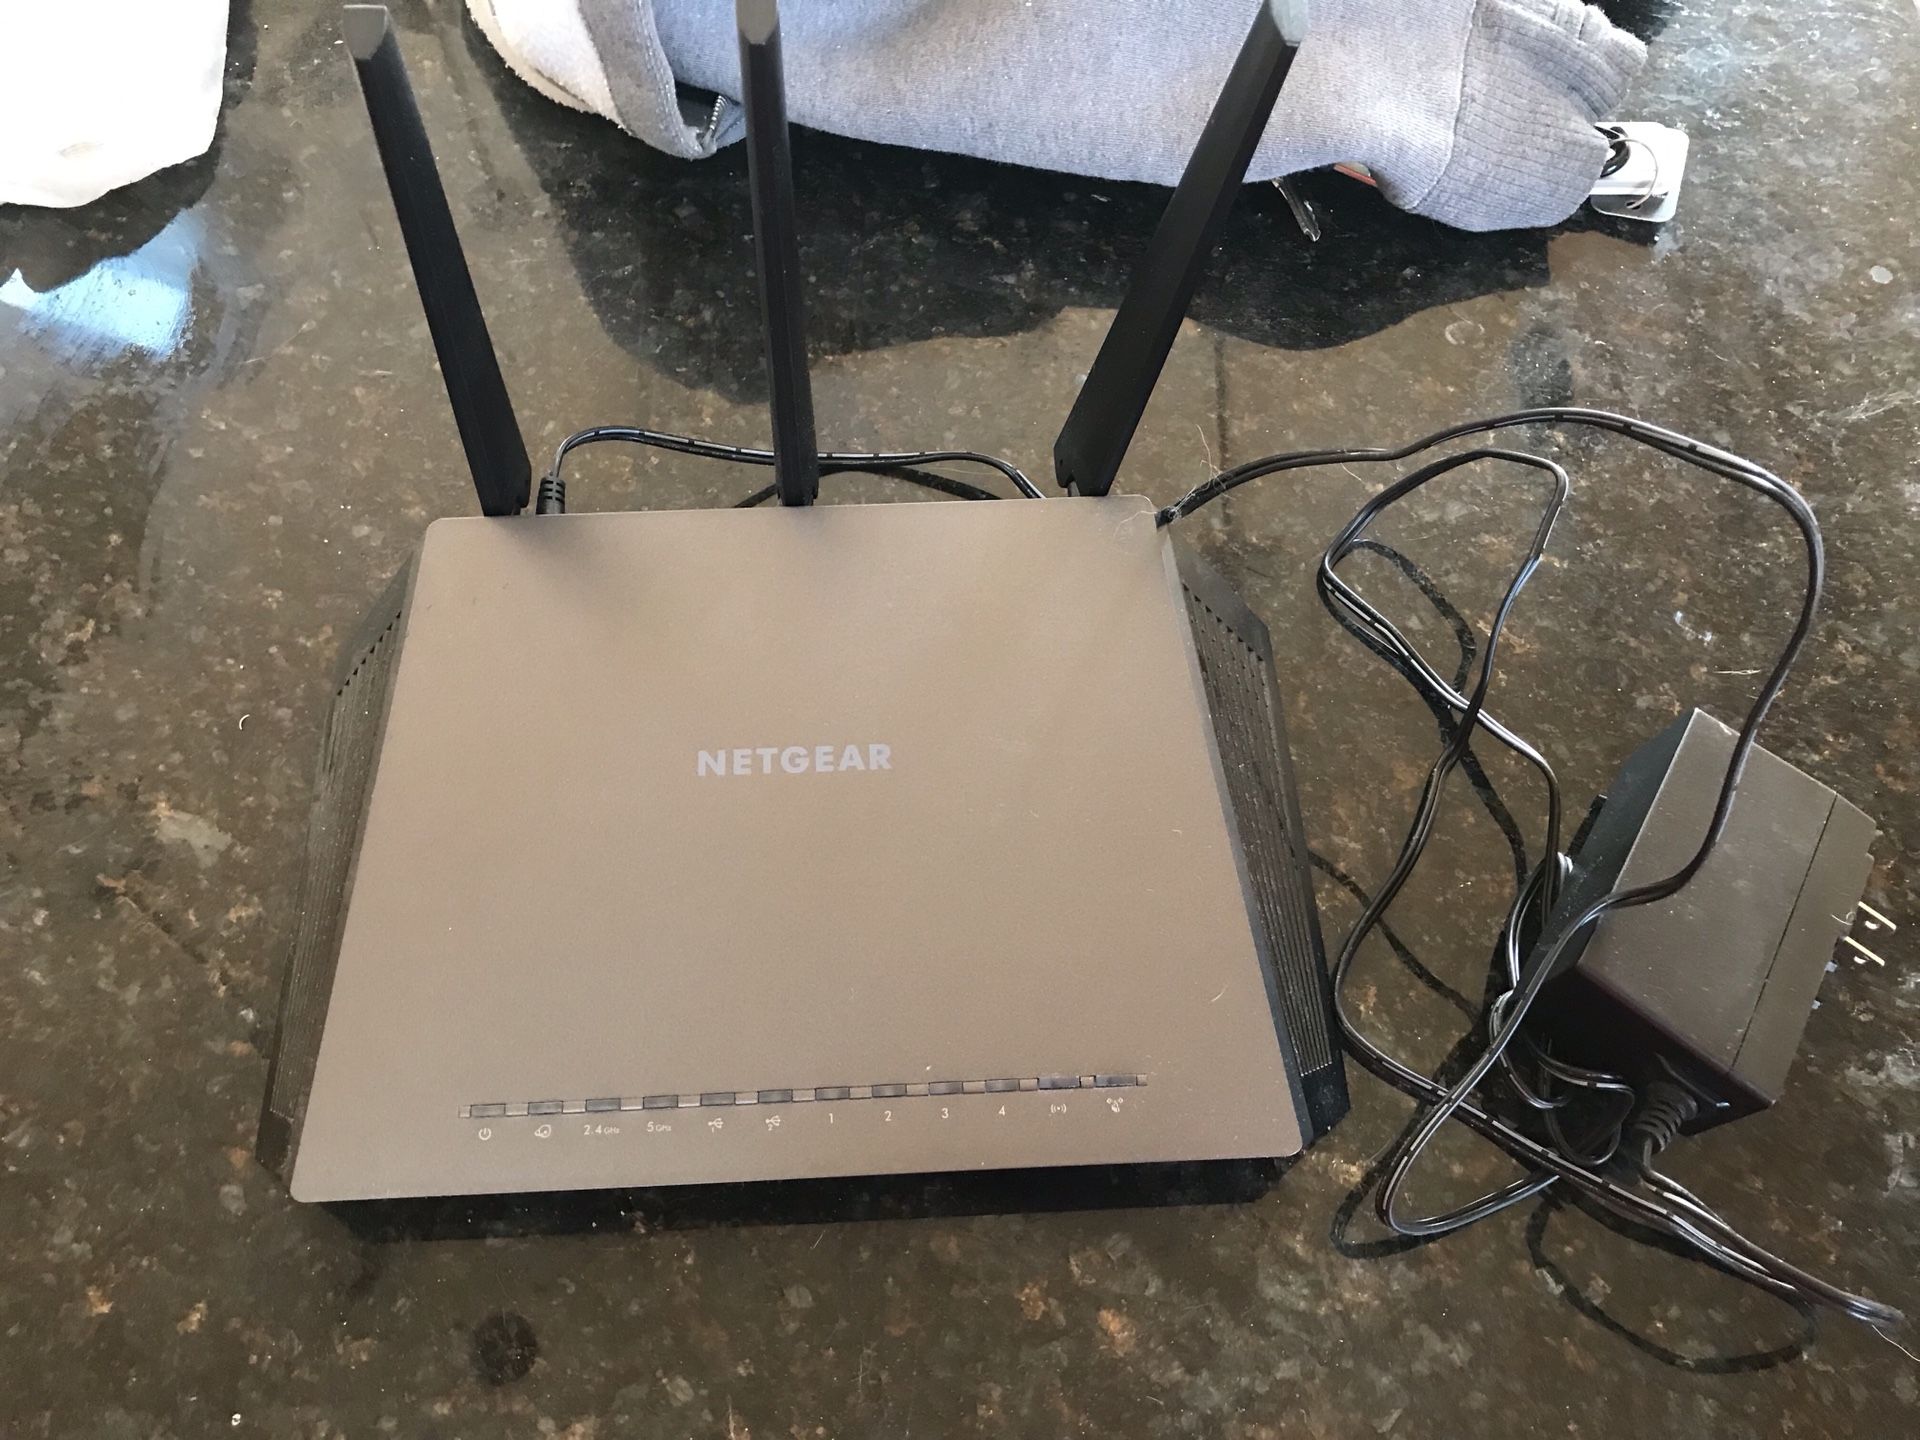 NETGEAR Nighthawk AC1900 Smart WiFi Router, model R7000